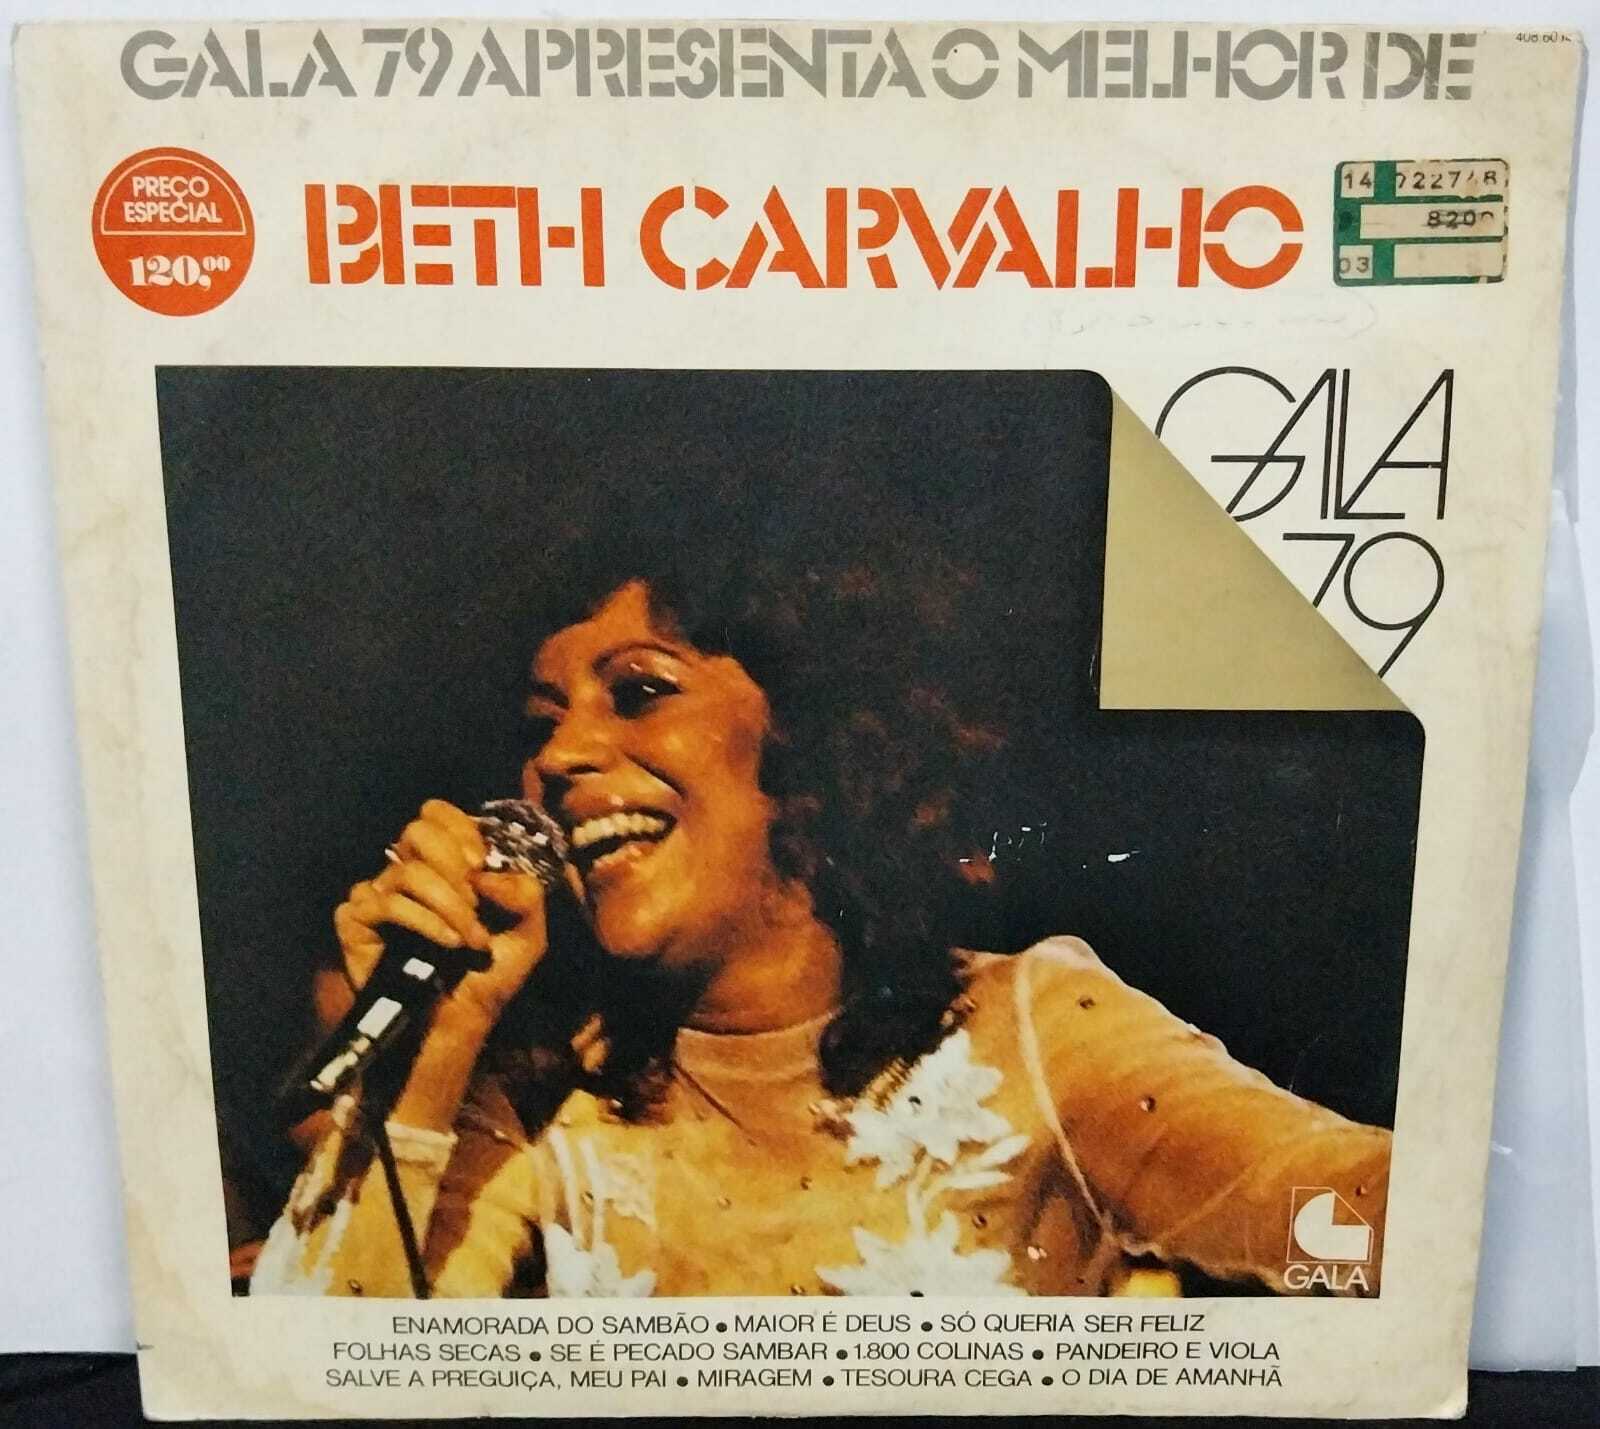 Vinil - Beth Carvalho - Gala 79 Apresenta O Melhor De